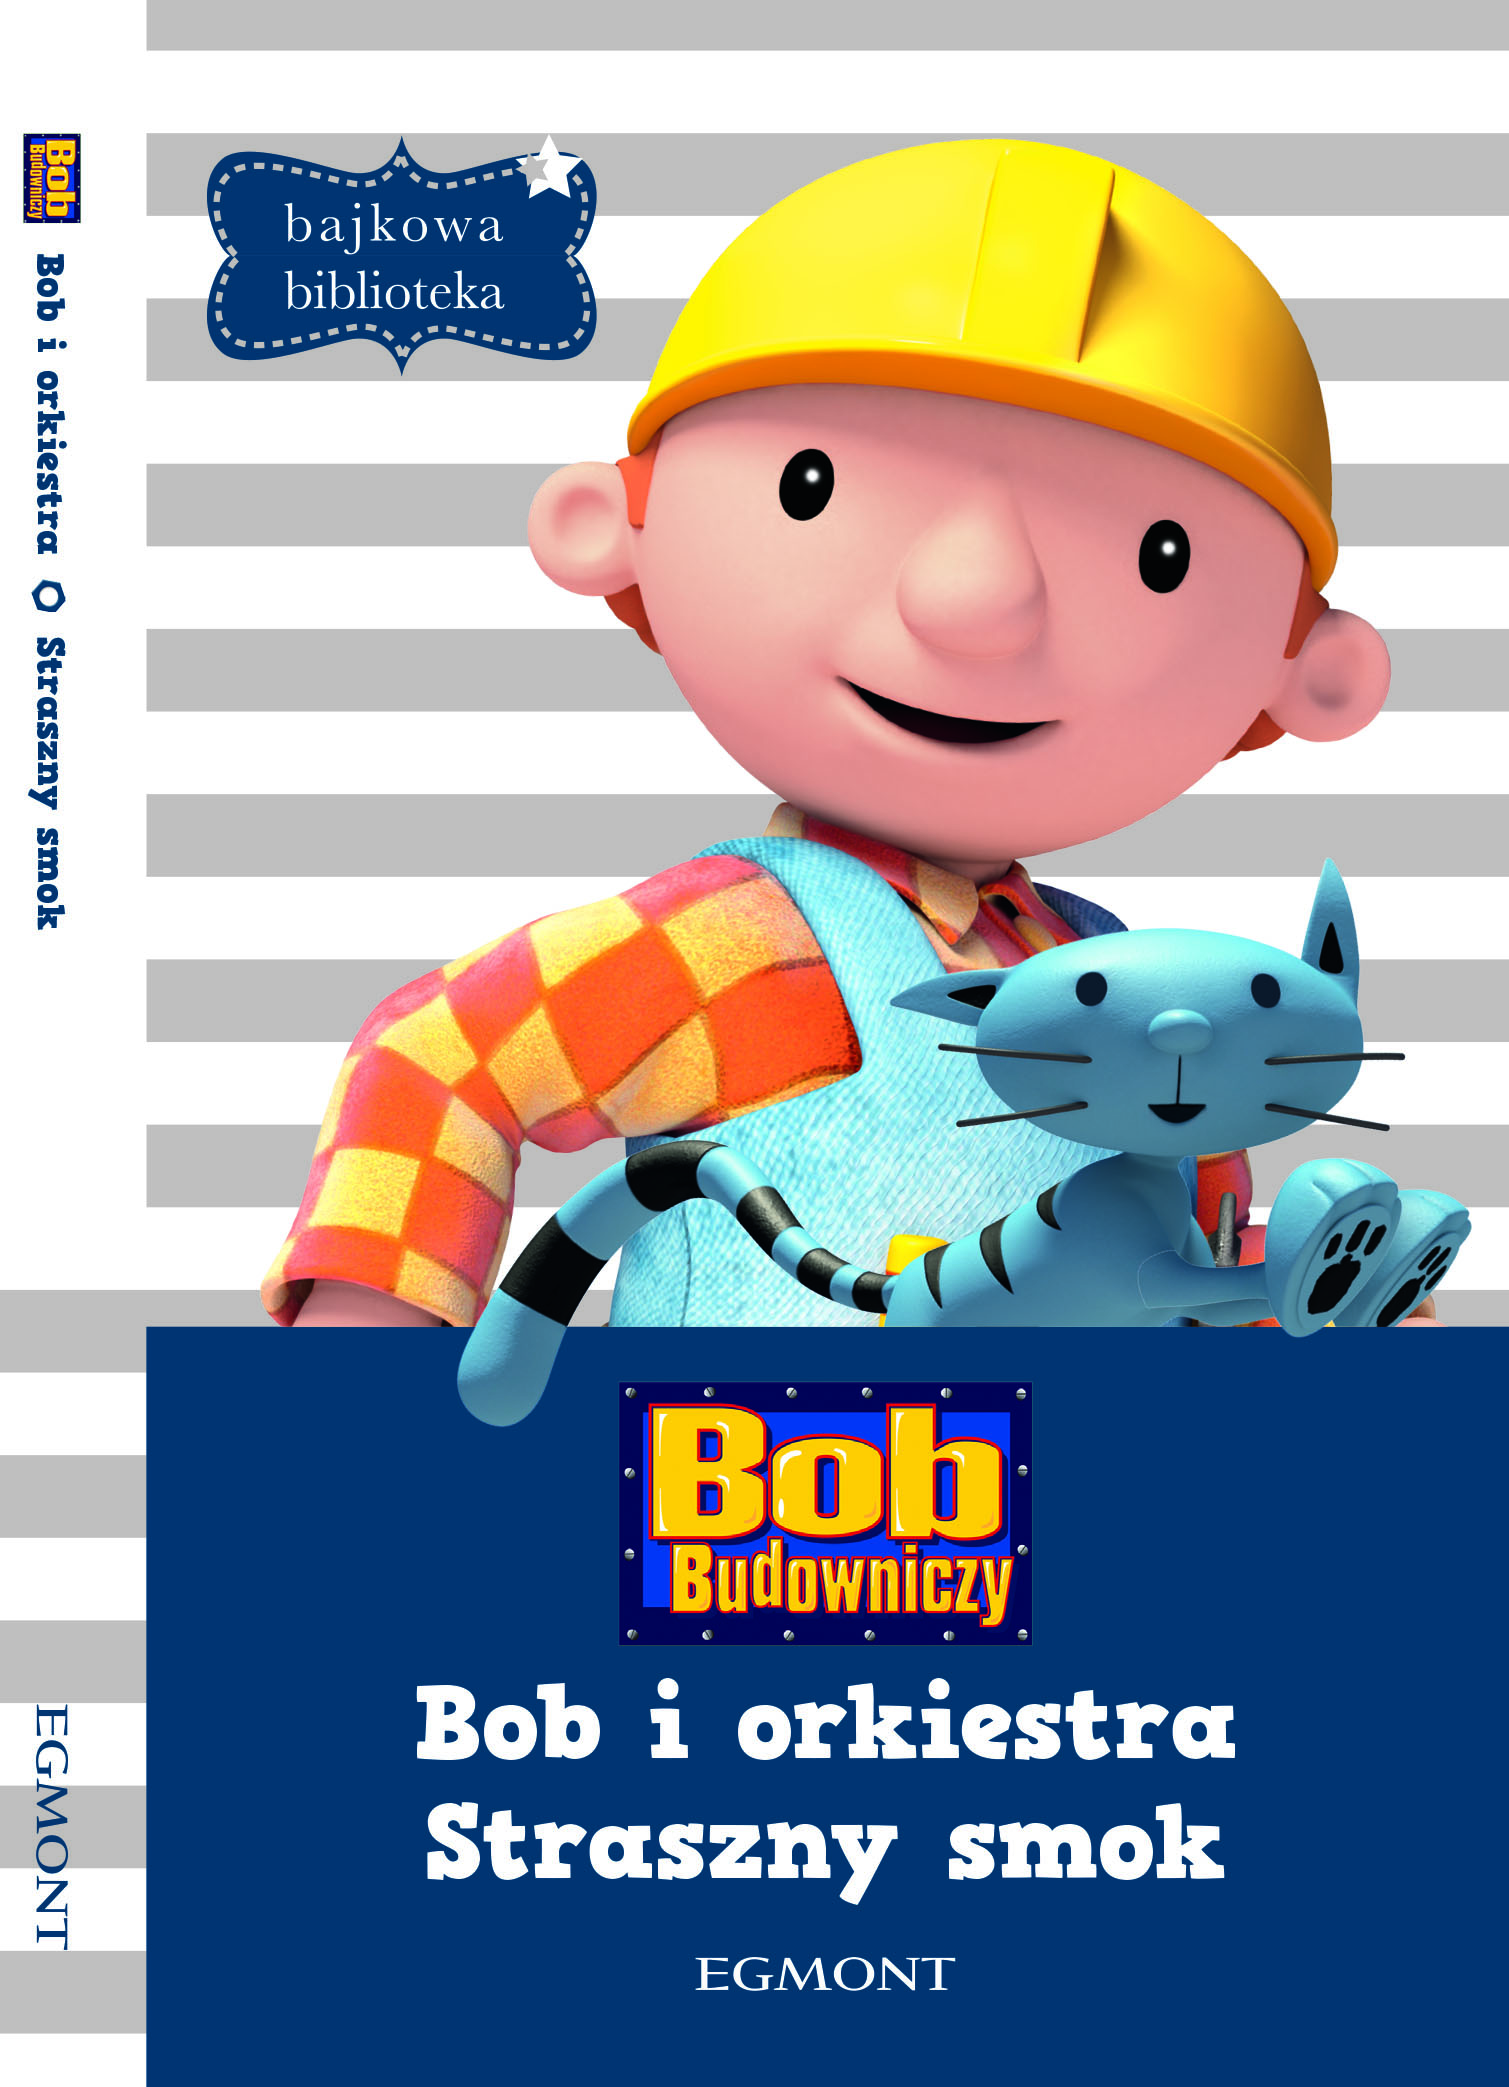 Bob Budowniczy – Bob i orkiestra